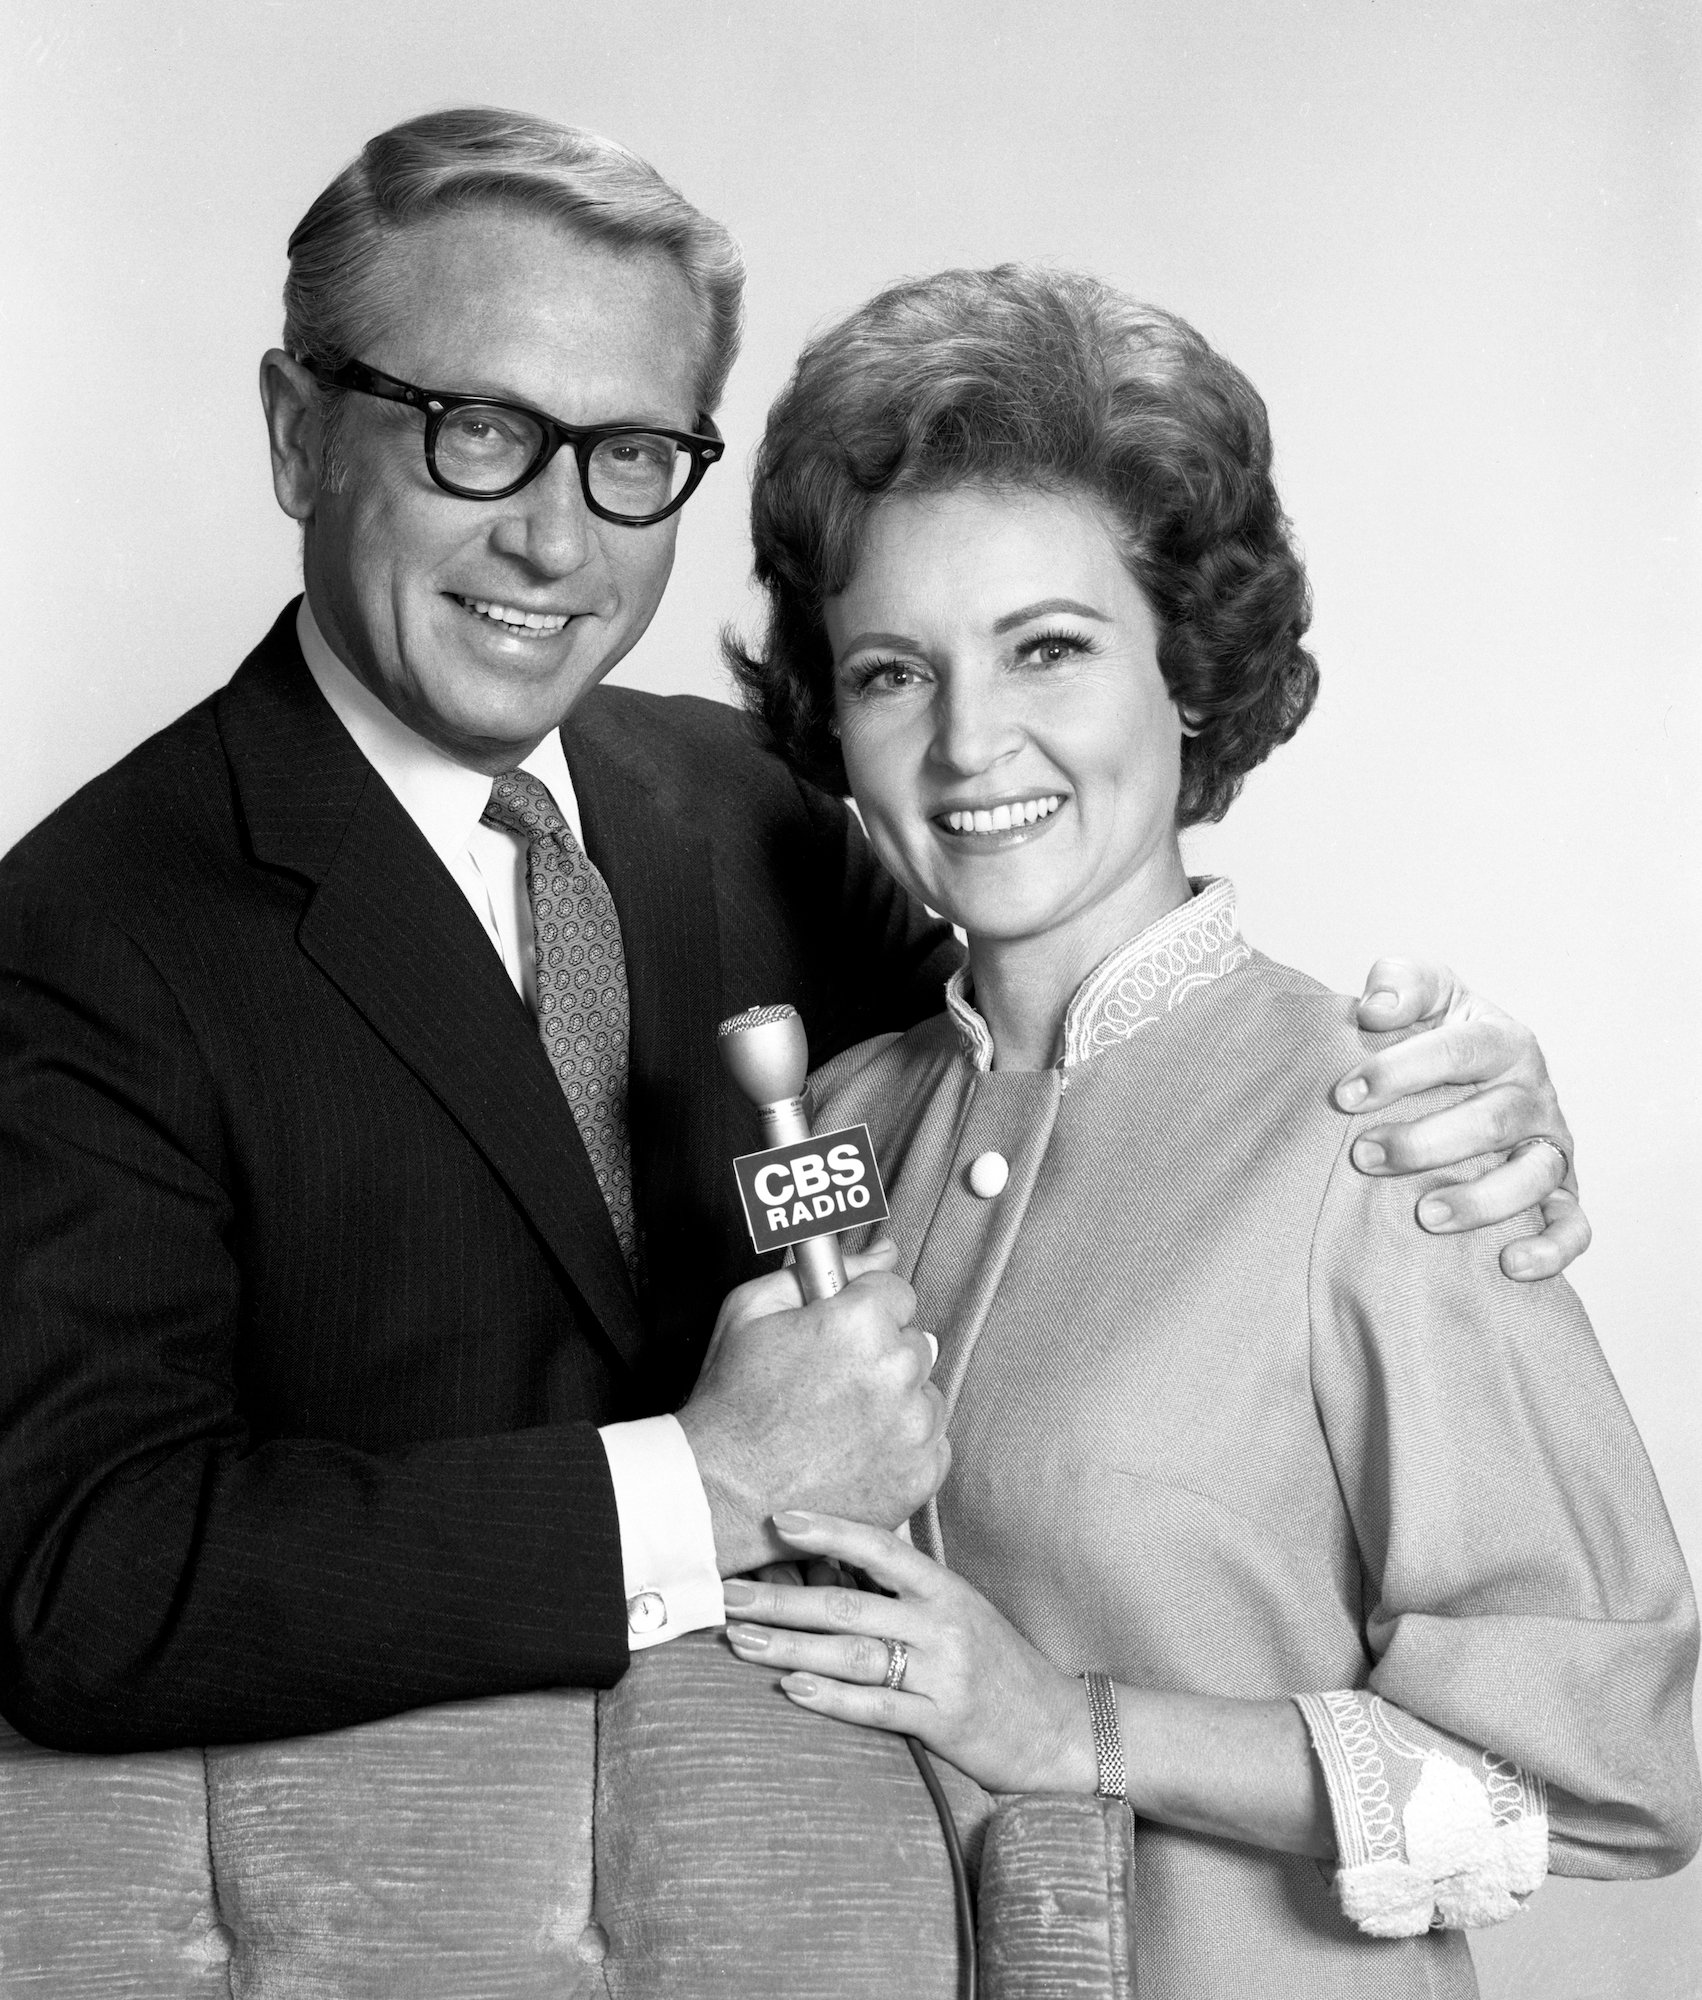 Allen Ludden and Betty White